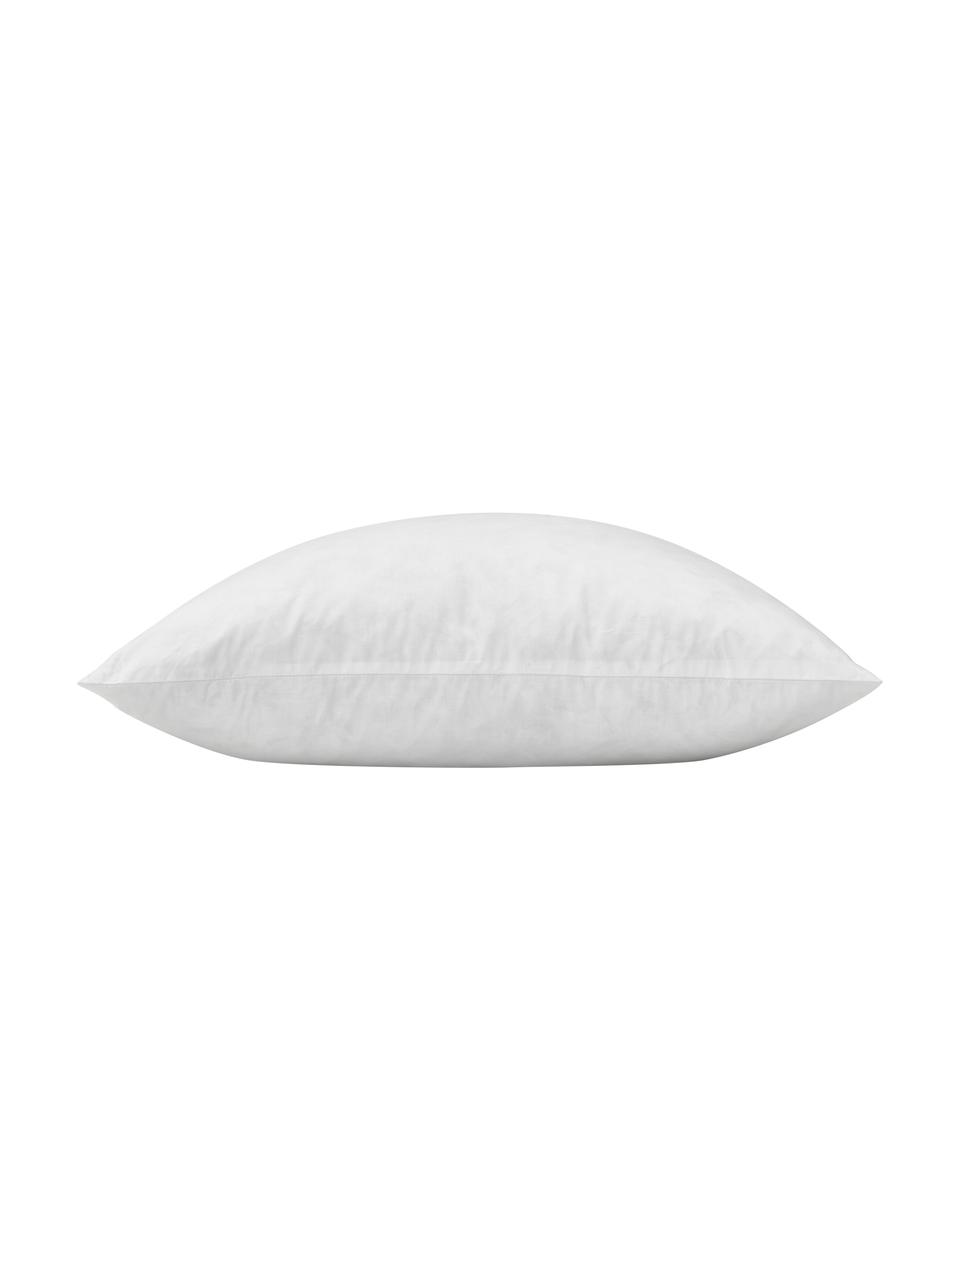 Wkład do poduszki dekoracyjnej Comfort, Tapicerka: 80% bawełna, 20% bawełna , Biały, S 50 x D 50 cm